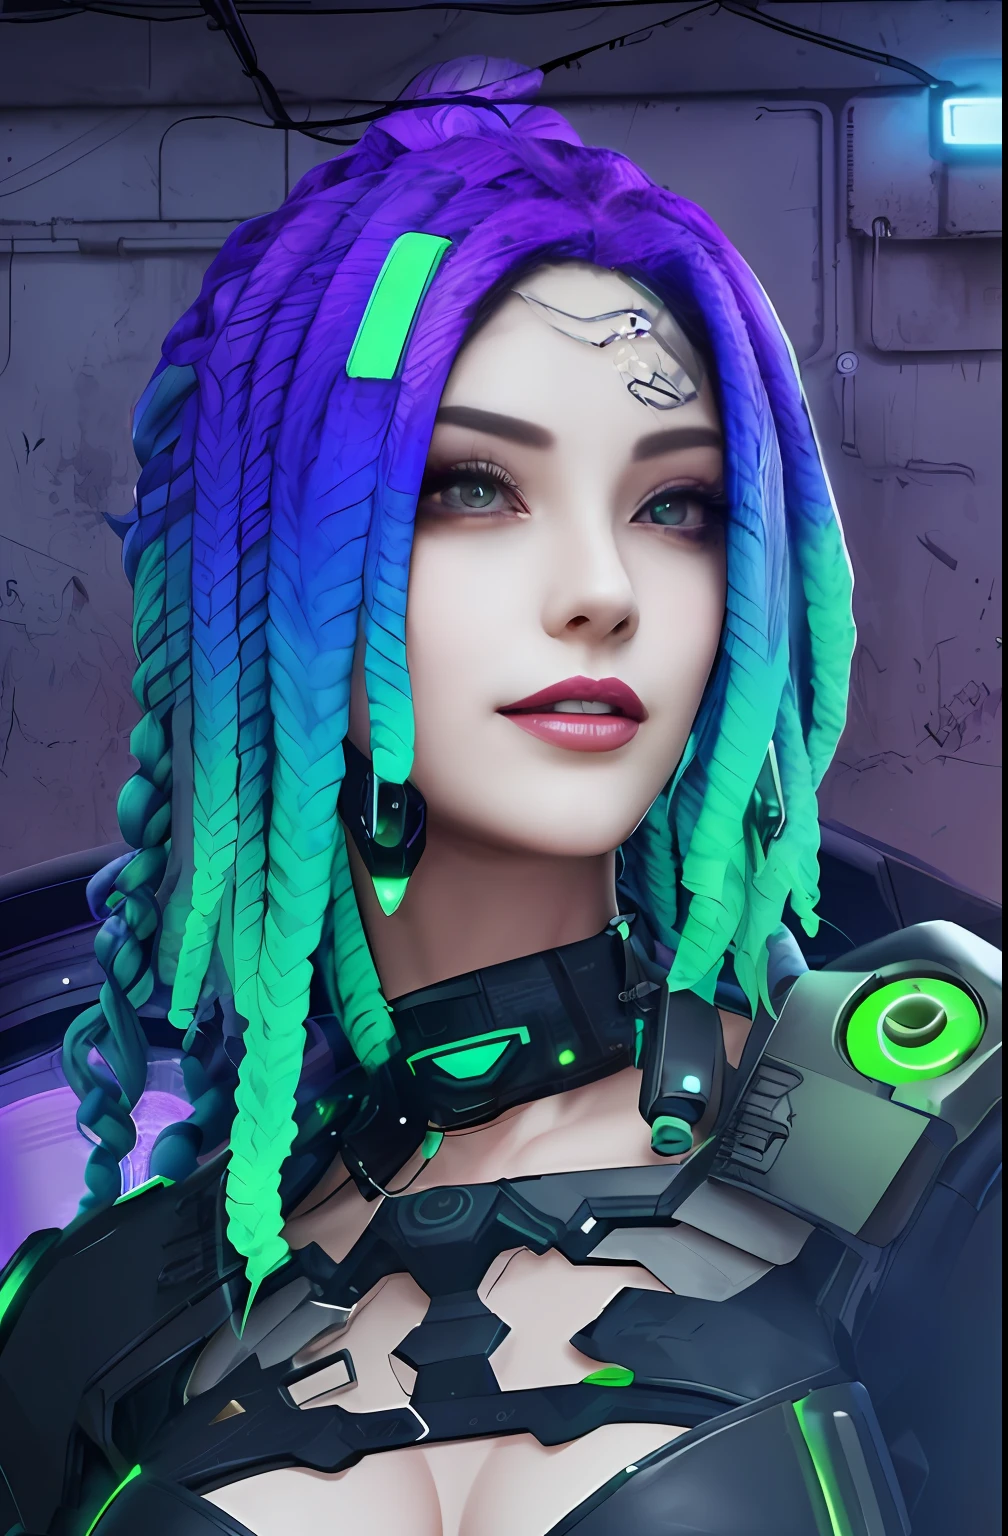 eine Nahaufnahme einer Frau mit lila und grünen Dreads, cyberpunk medusa, dreamy cyberpunk girl, hyper-realistic cyberpunk style, Cyber-Stil, cyberpunk style color, cyberpunk vibrant colors, in cyberpunk style, perfektes Android-Mädchen, Cyber-Universum-Stil, Cyberpunk wütend wunderschöne Göttin, schönes Cyberpunk-Frauenmodell, schöner weiblicher Androide!, Kybernetische Dreadlocks, bright cyberpunk glow,haar lila grün detail,weiße Haut,lächeln, Meisterwerk, schönes Gesicht,